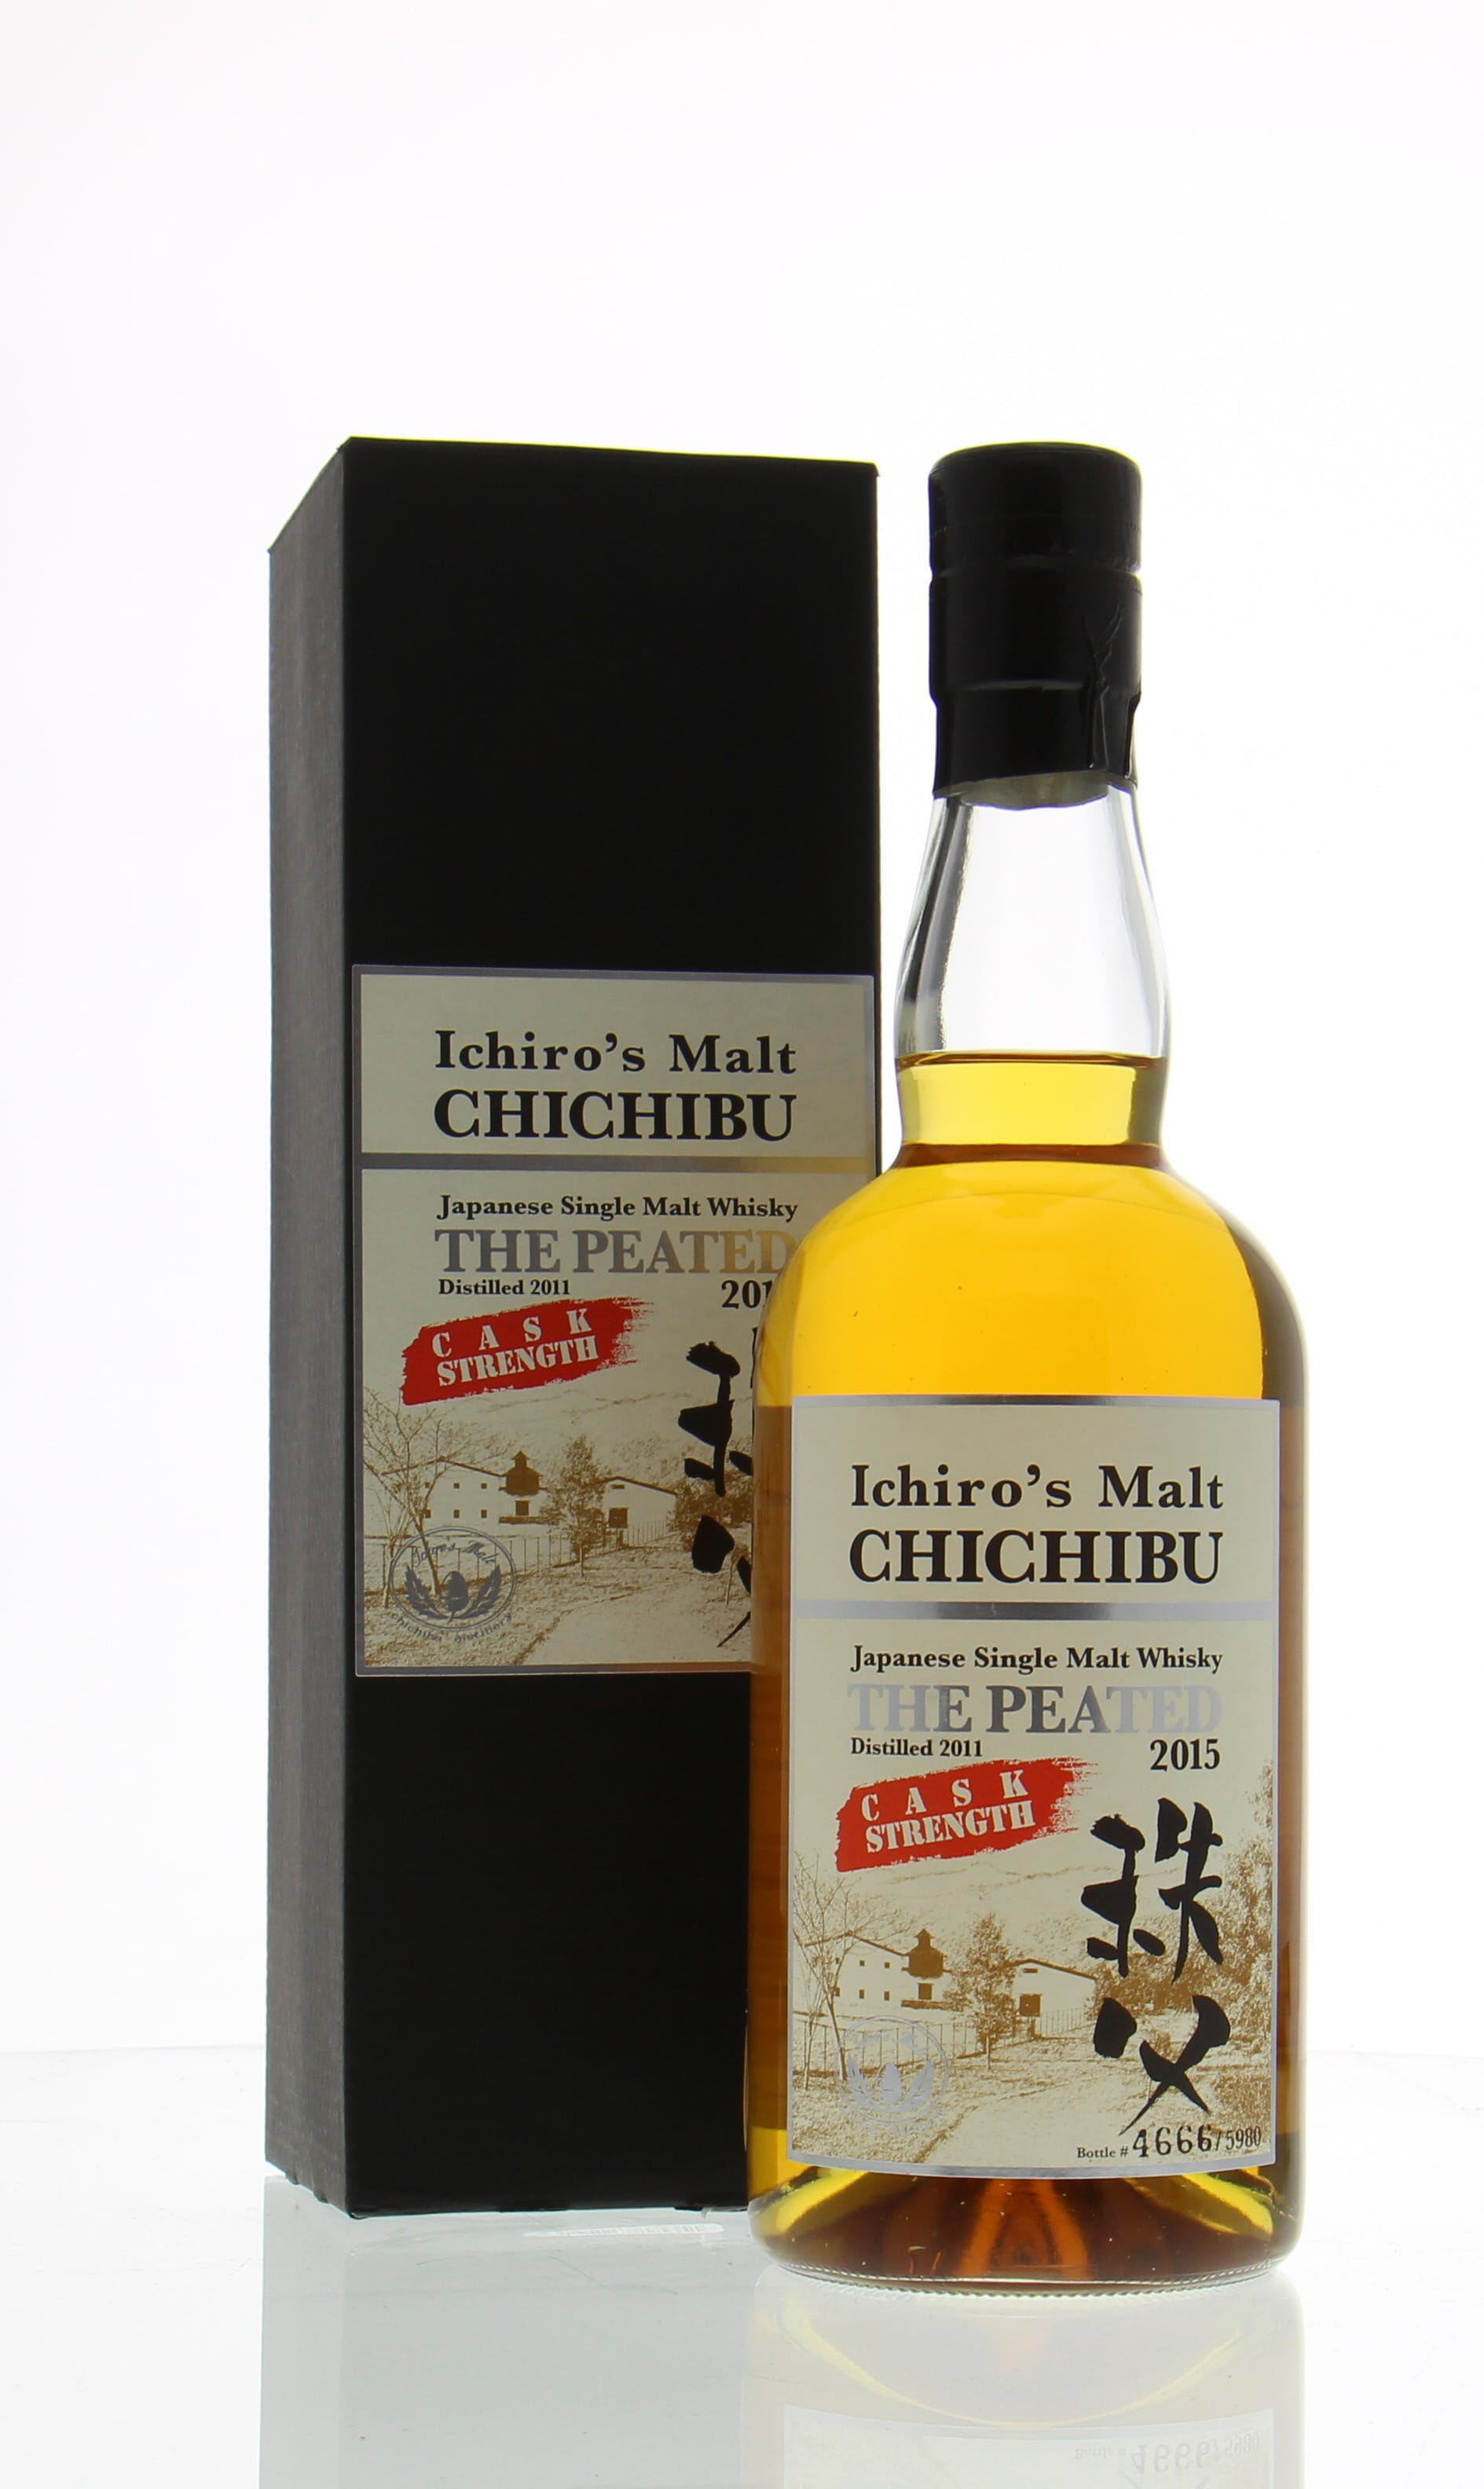 Chichibu - The Peated  2015  Ichiro's Malt 62.5% 2011 In Original Container